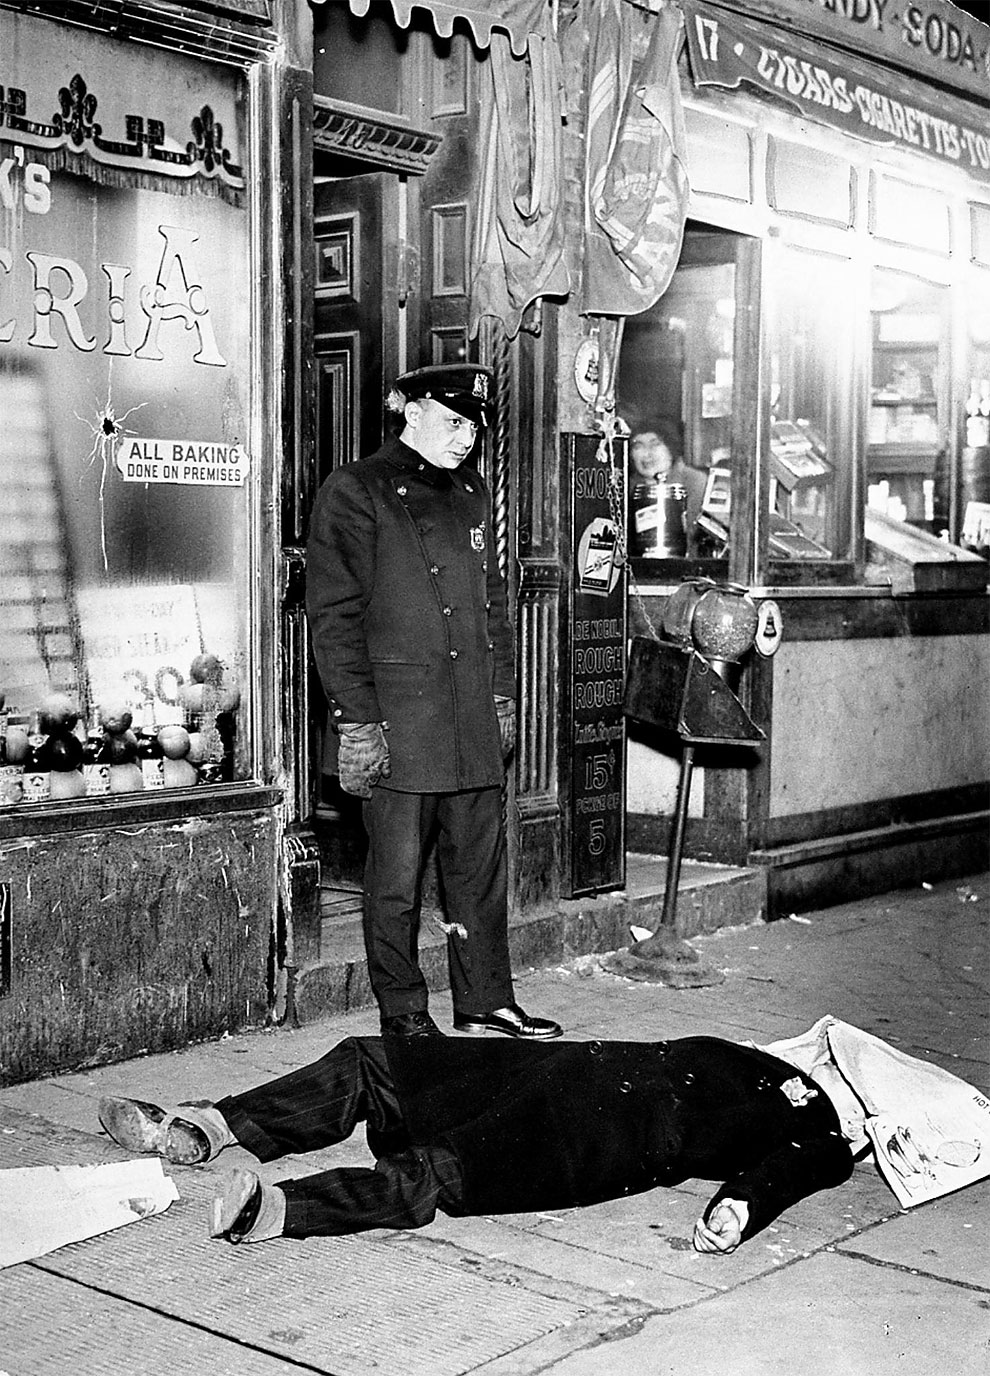 Тело Джо (Aces) Мацца на 17-ой авеню Нью-Йорке. Гангстер погиб во время бандитских разборок, 21 февраля 1931 года.